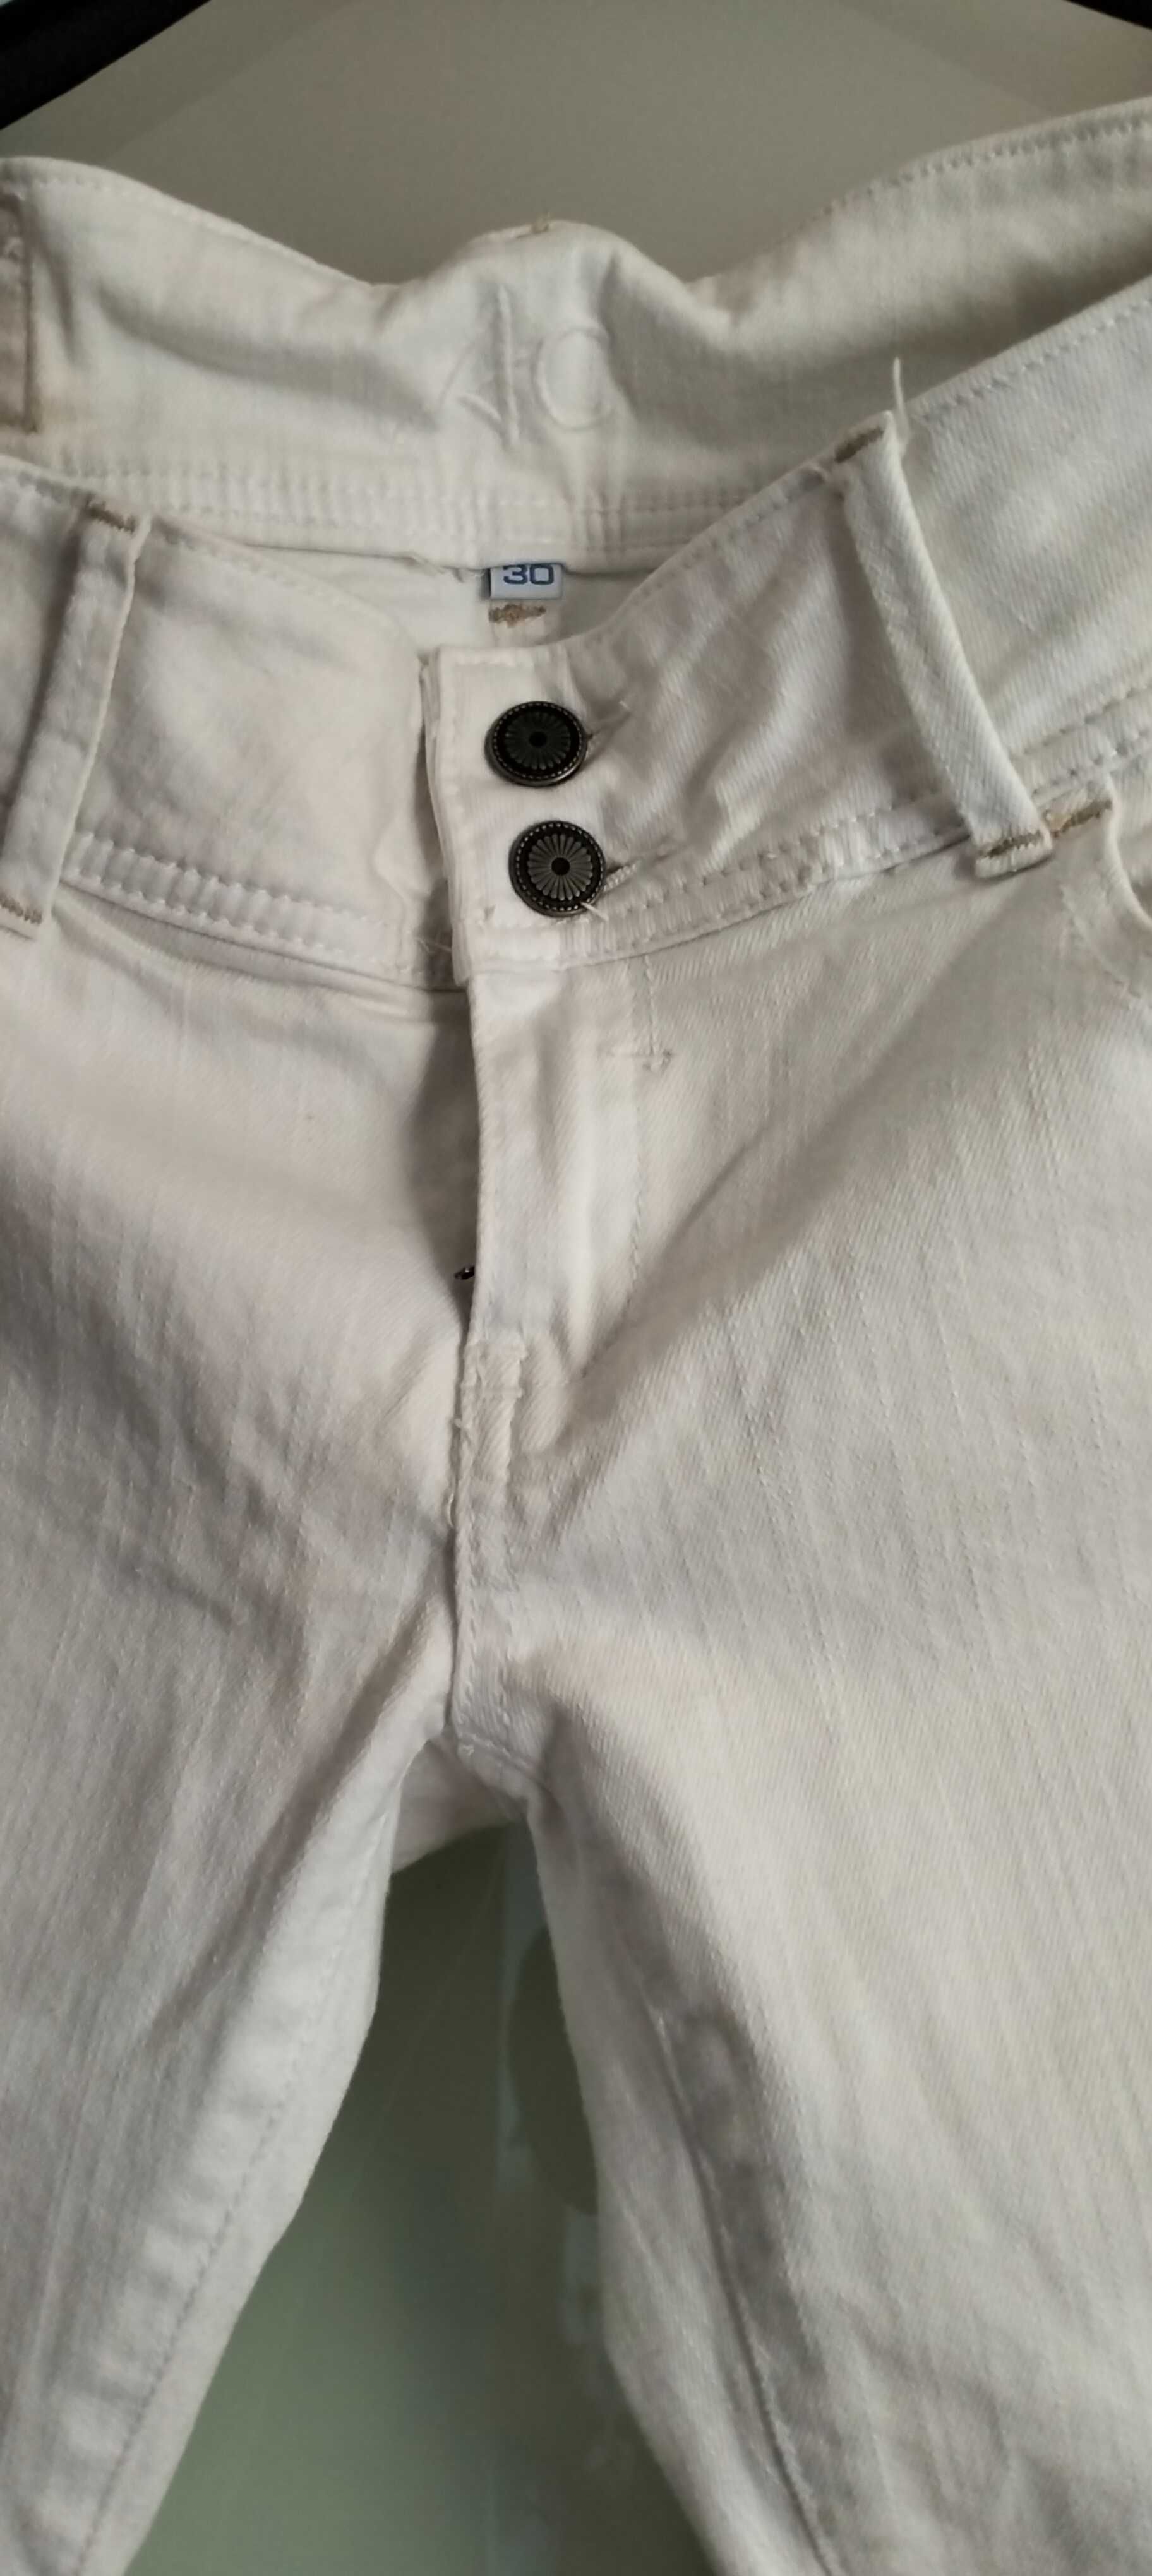 NOWE damskie białe jeansy marki AC denim rozmiar 30